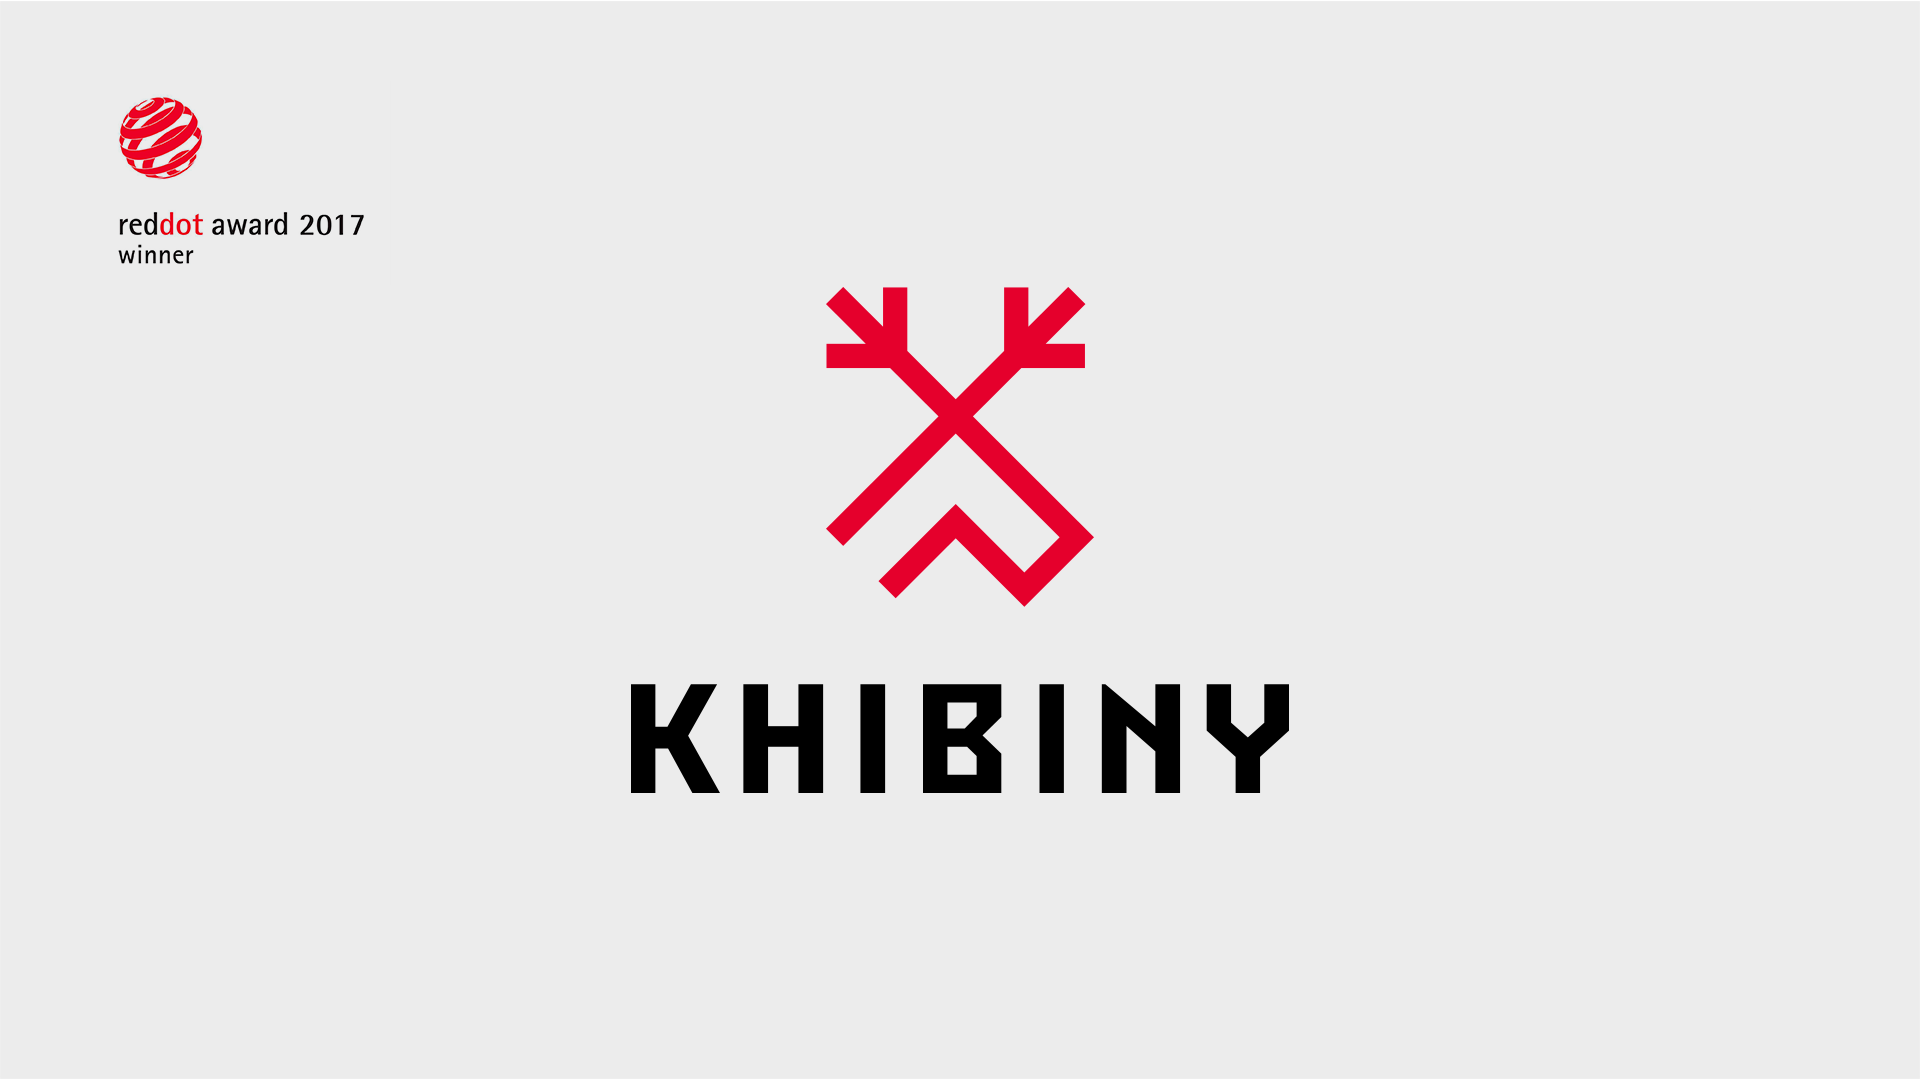 Khibiny